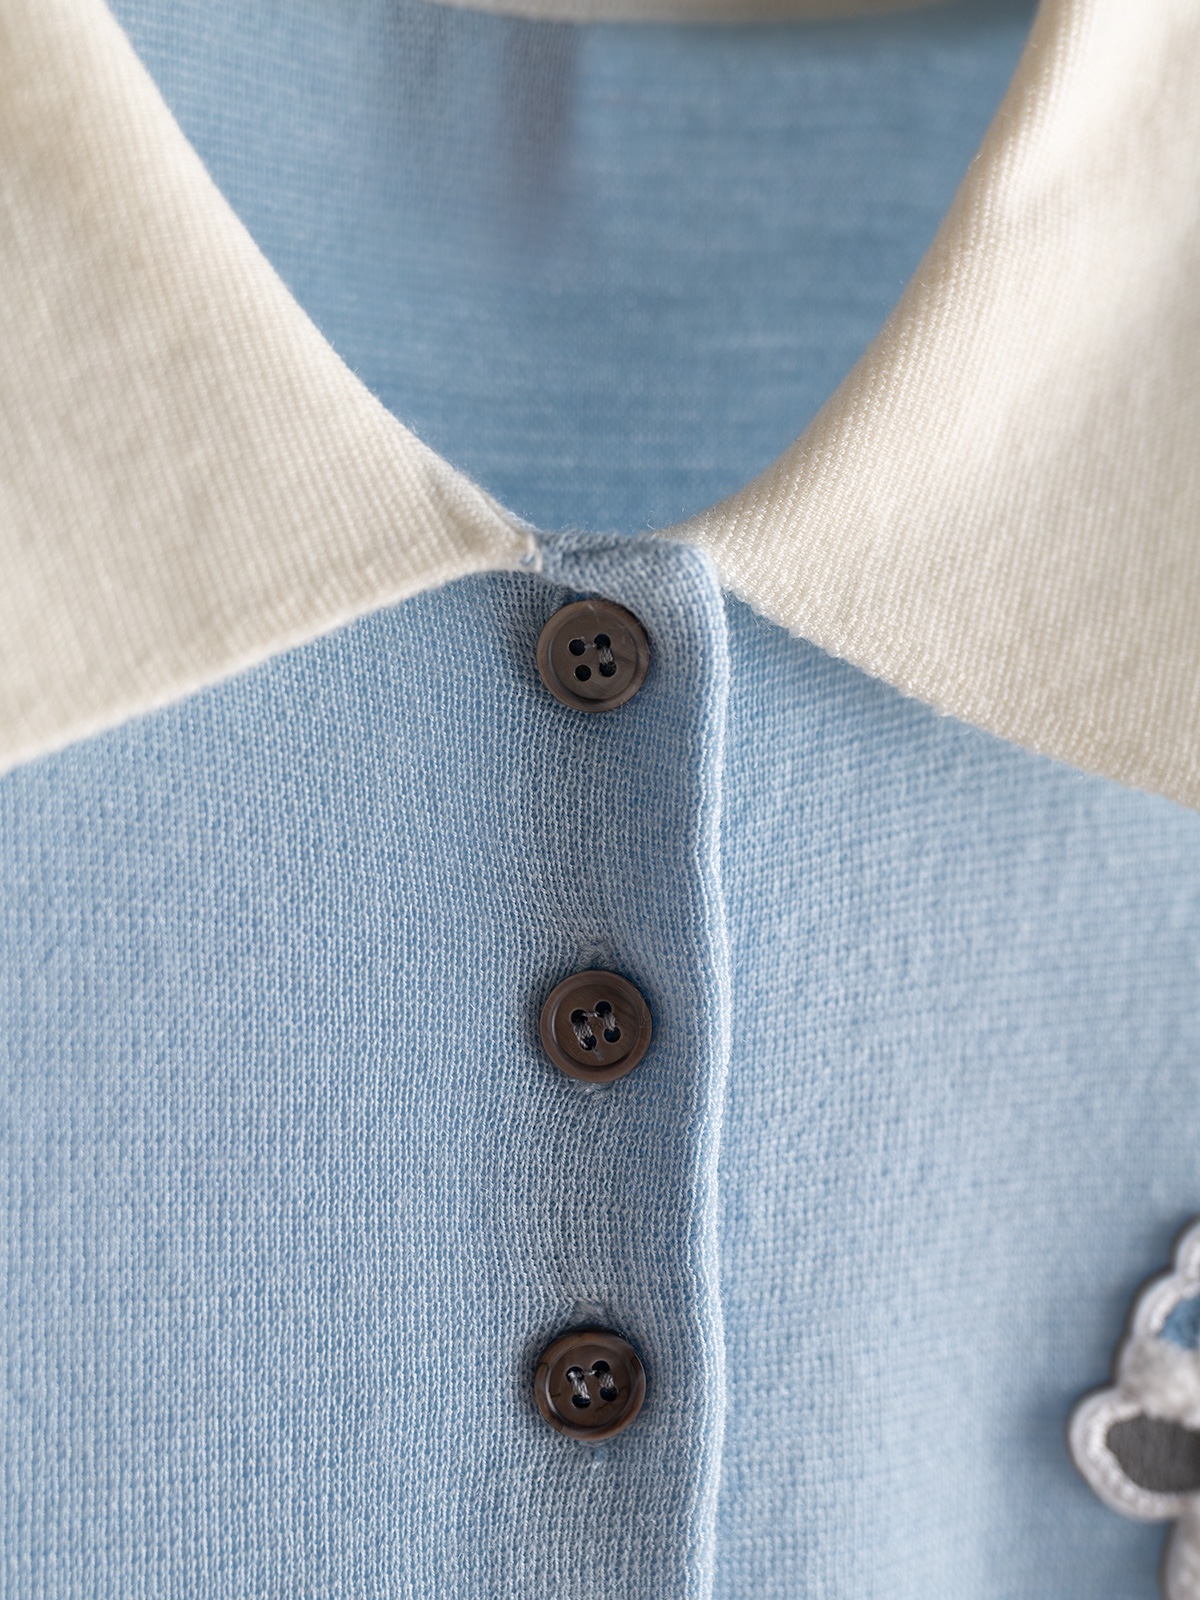 tb套装系列款16针织机全件四平加坑条织法最新公仔系列产品定纺纱线经典版型两色sml